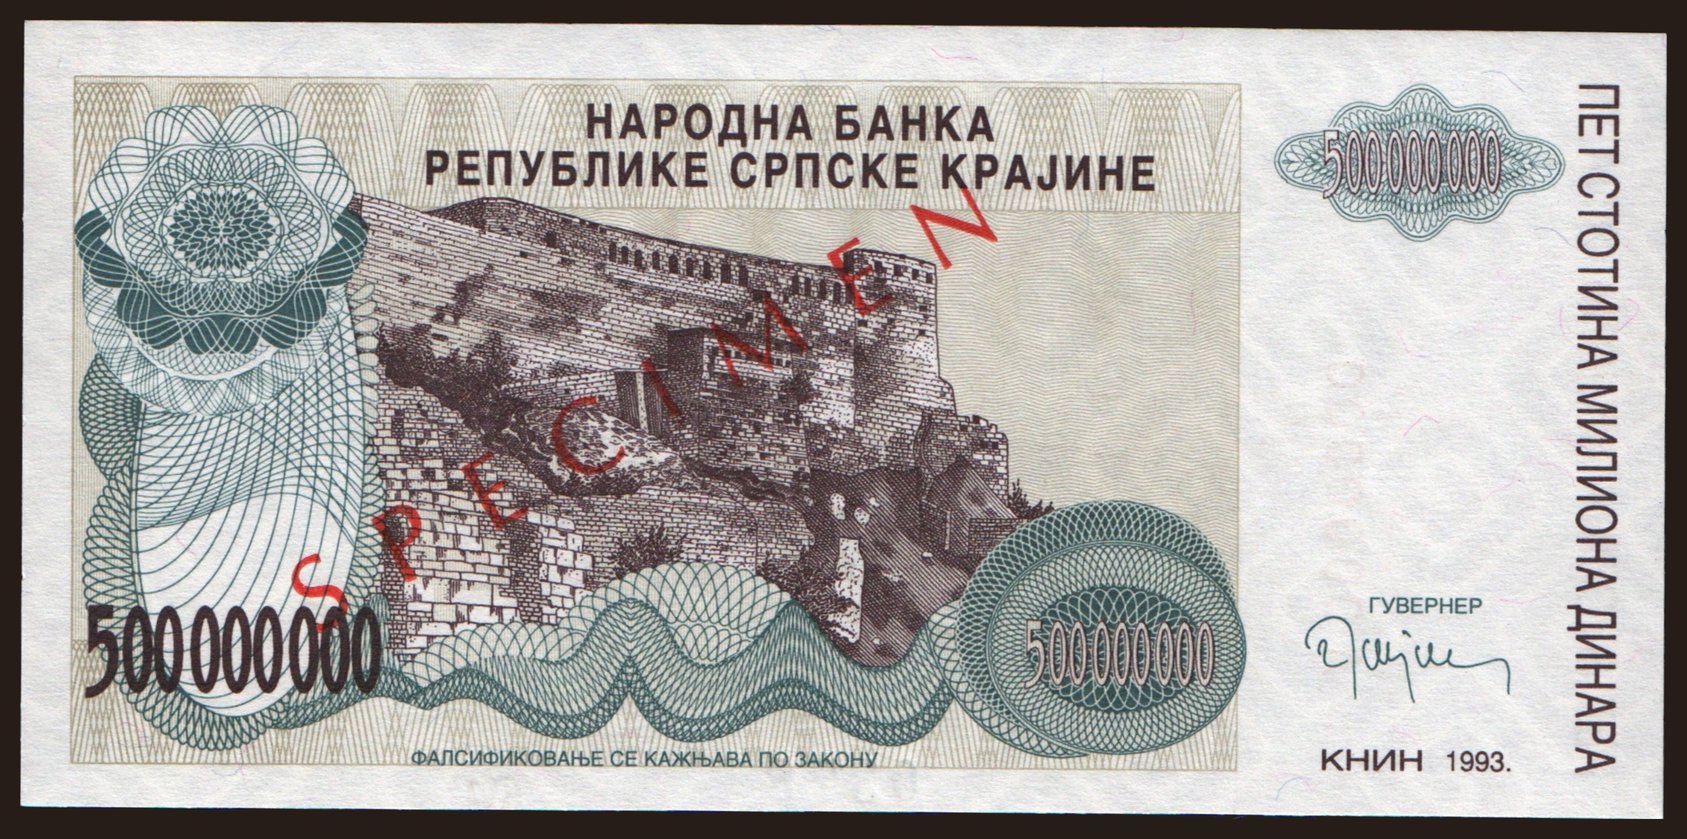 RSK, 500.000.000 dinara, 1993, SPECIMEN